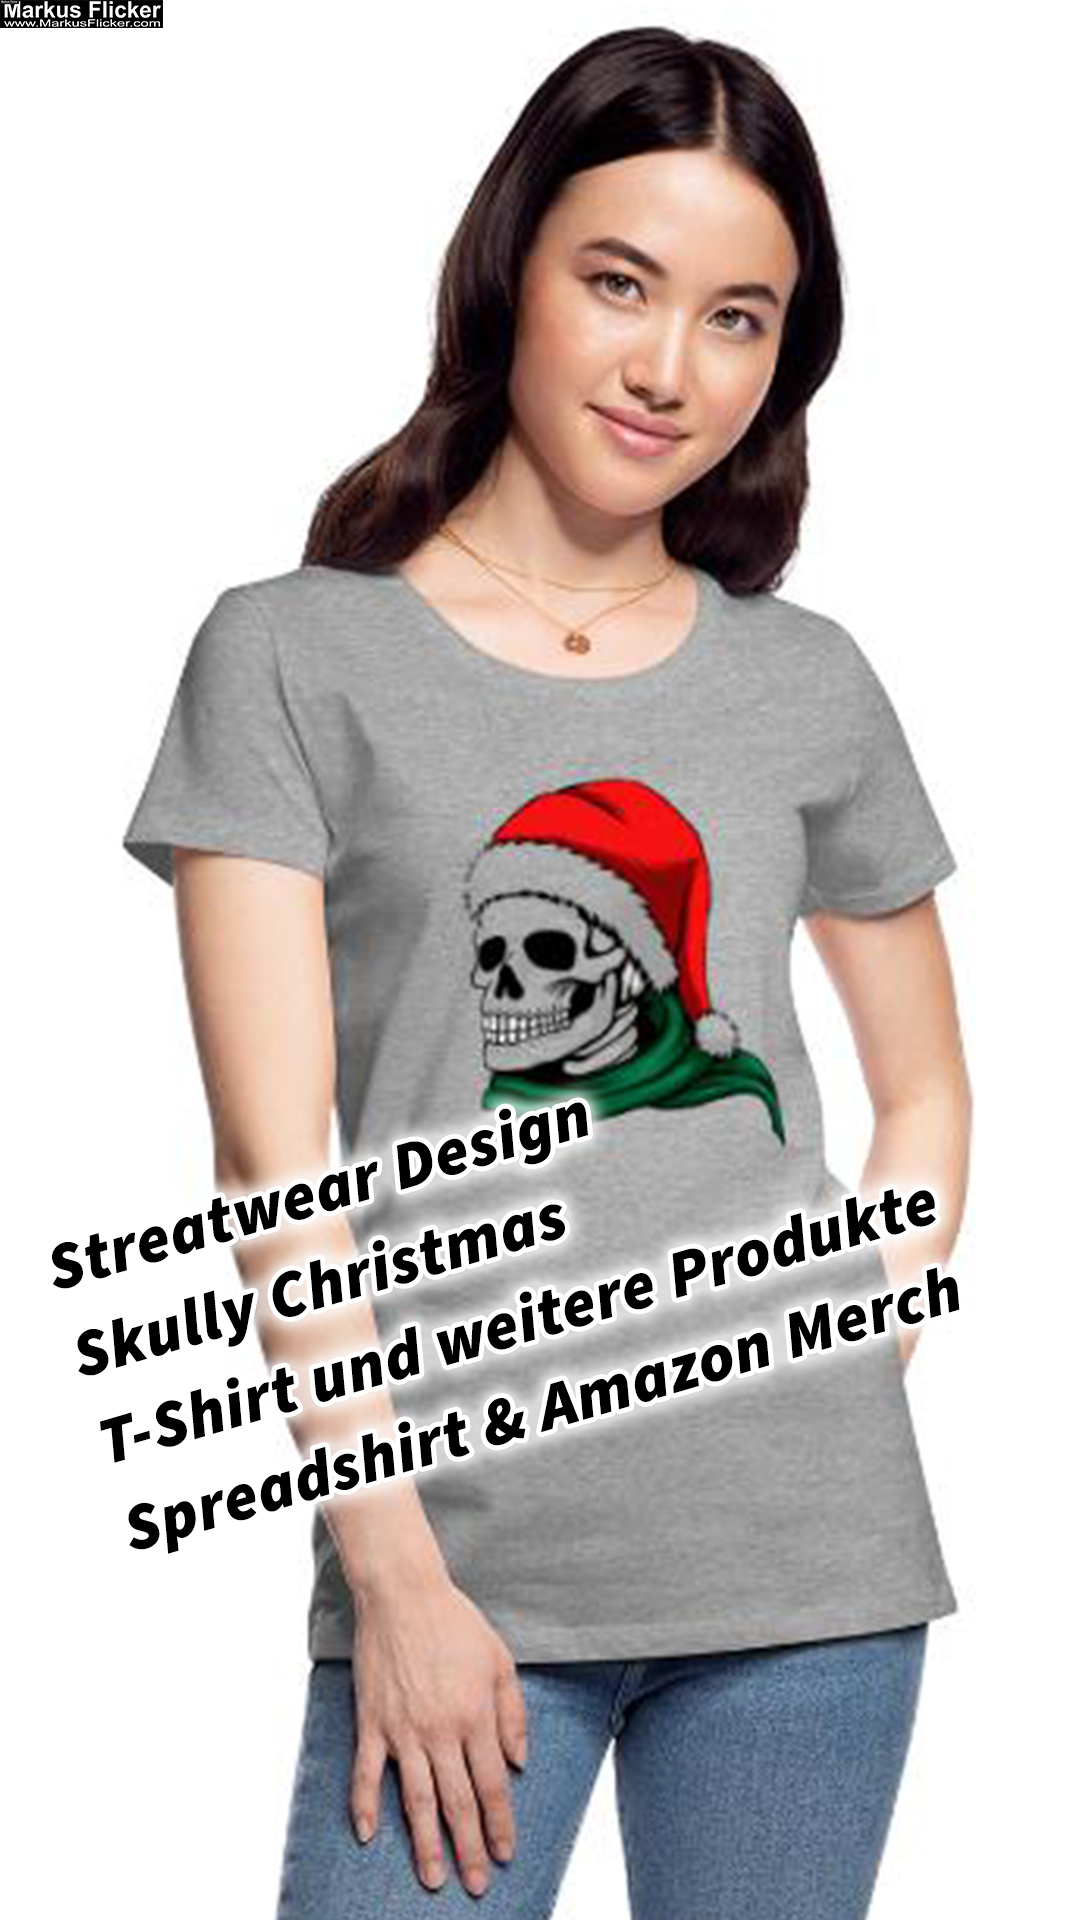 Streatwear Design Skully Christmas T-Shirt und weitere Produkte Spreadshirt & Amazon Merch